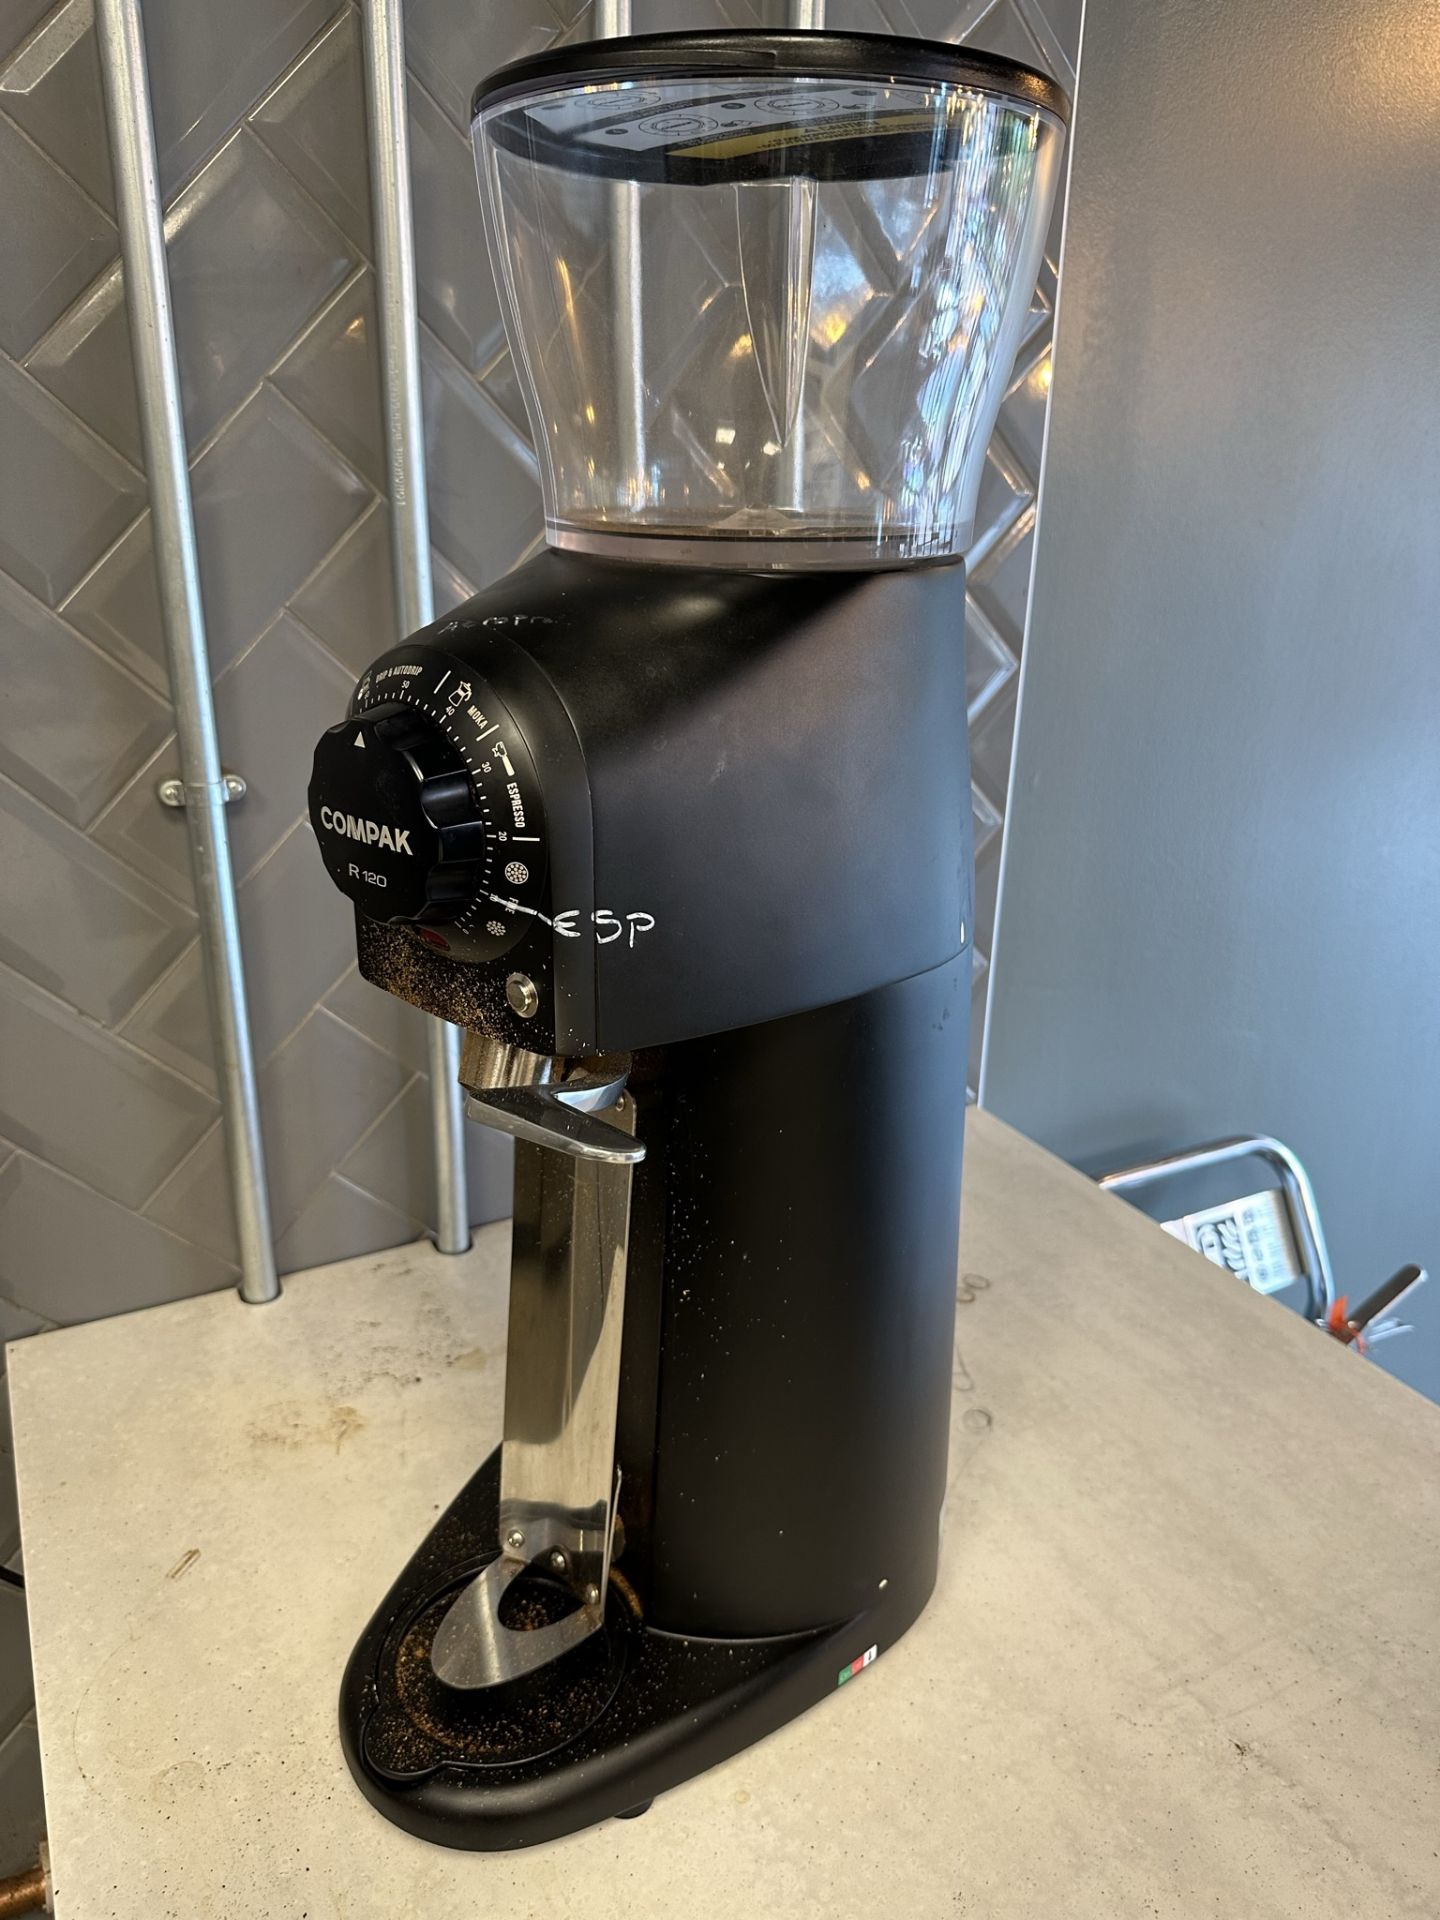 Compak R120 Industrial Coffee Grinder - Bild 4 aus 4